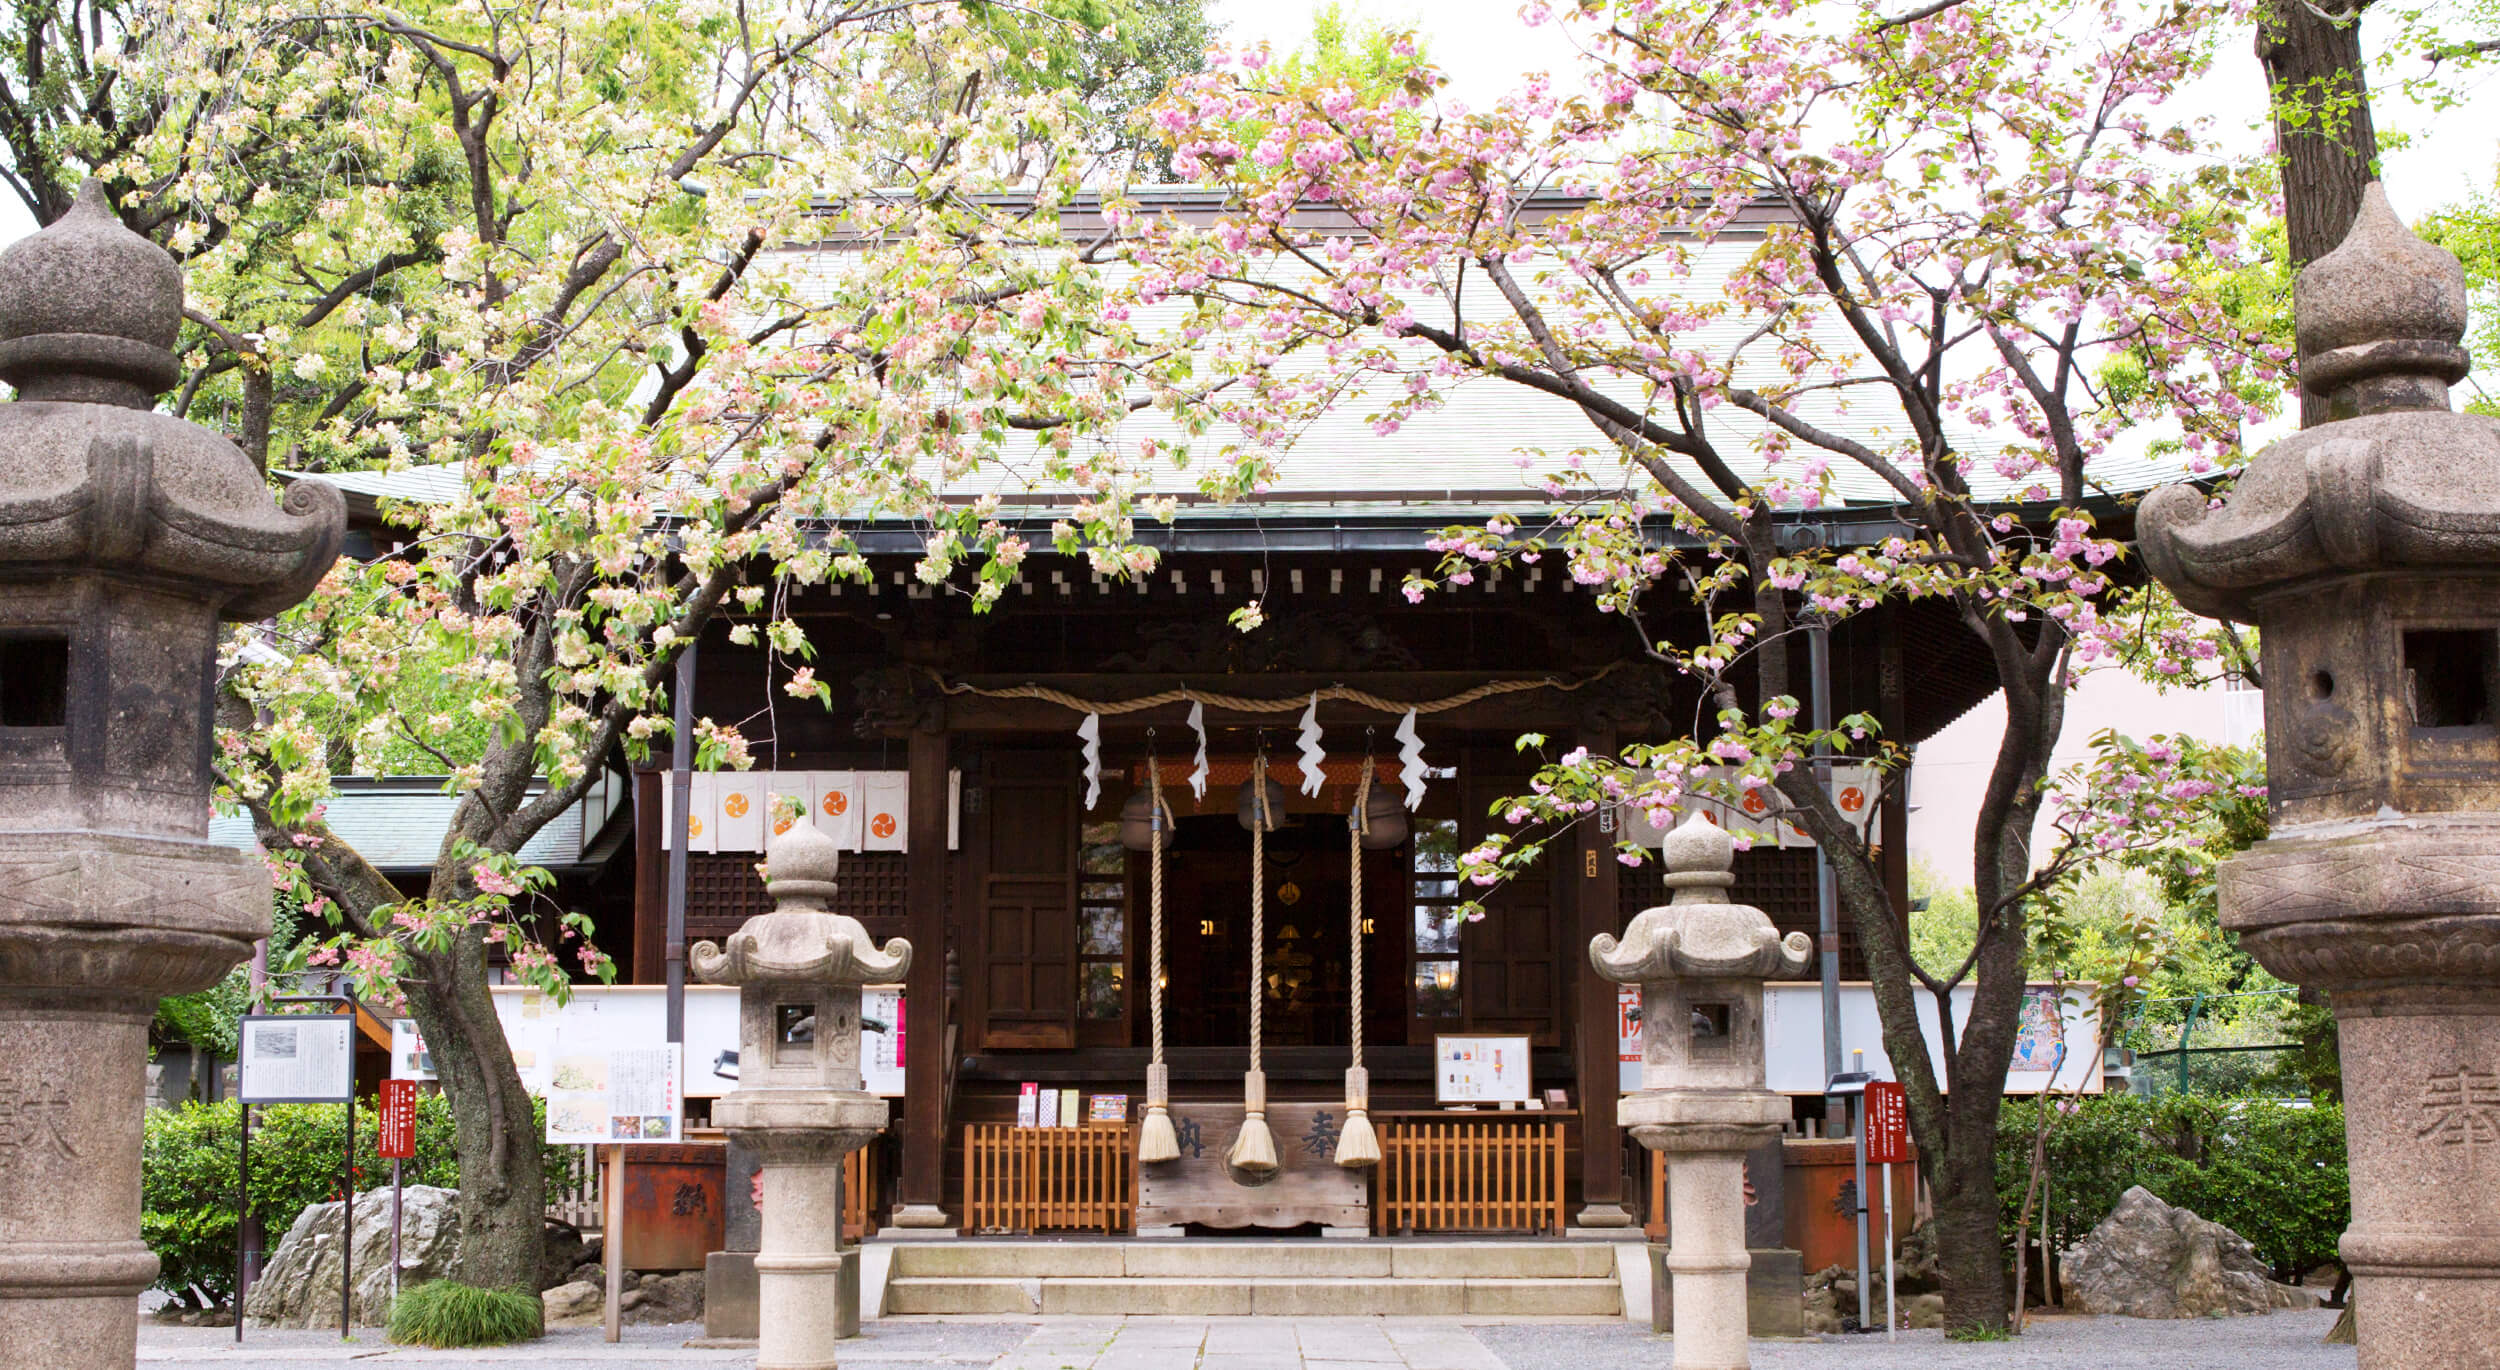 東京都北区で安産・厄除・お宮参りの祈願・お参りをするなら七社神社へ